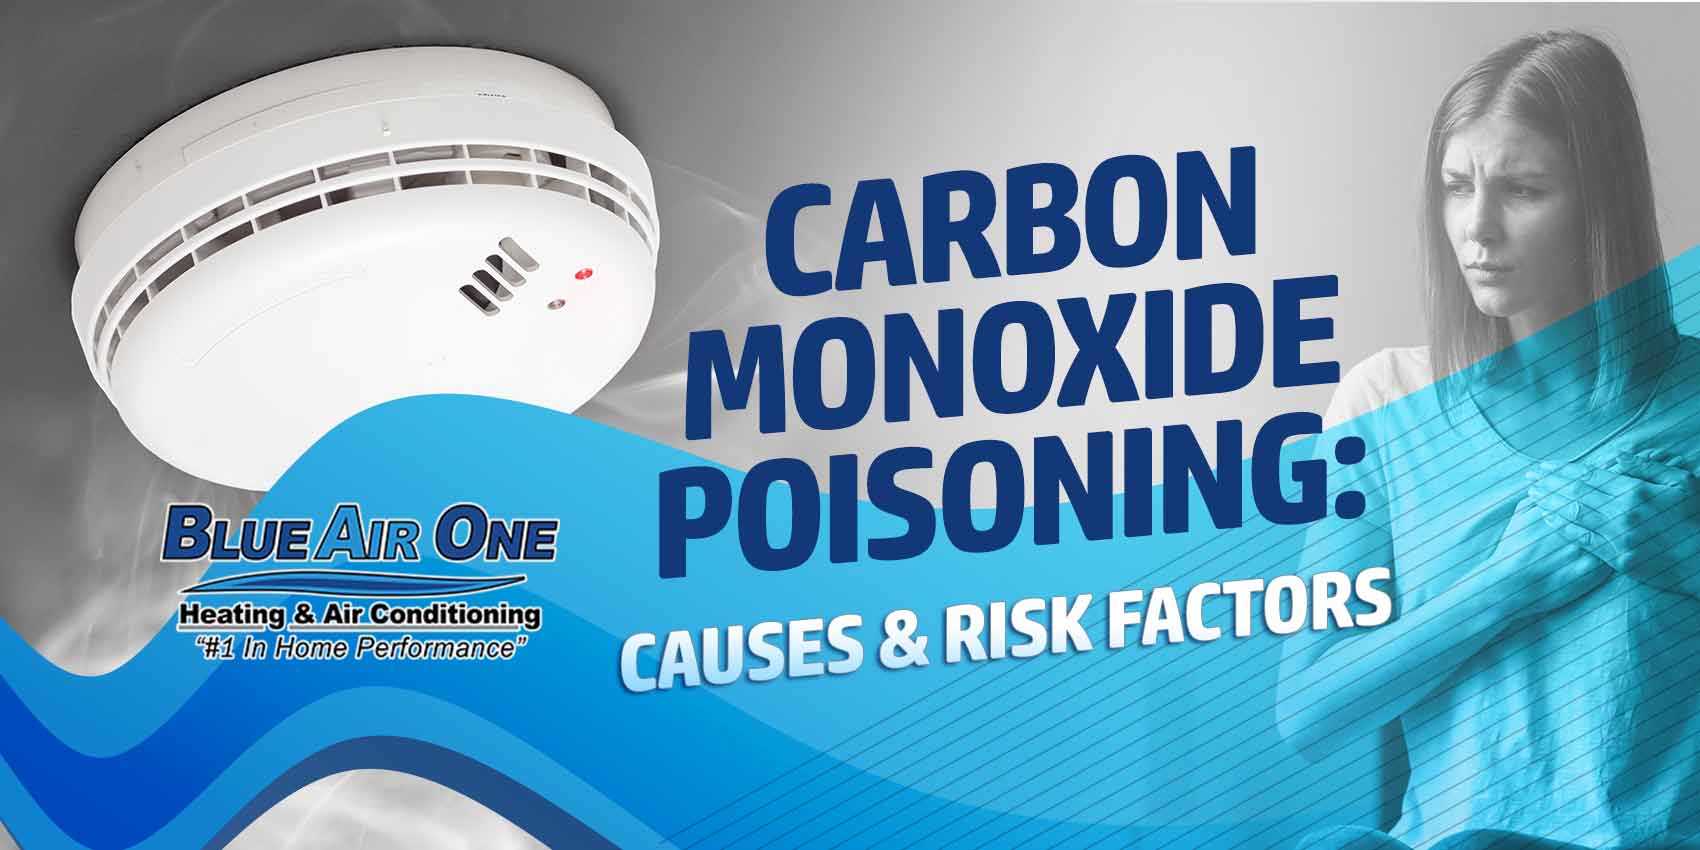 Carbon Monoxide Poisoning: Causes & Risk Factors